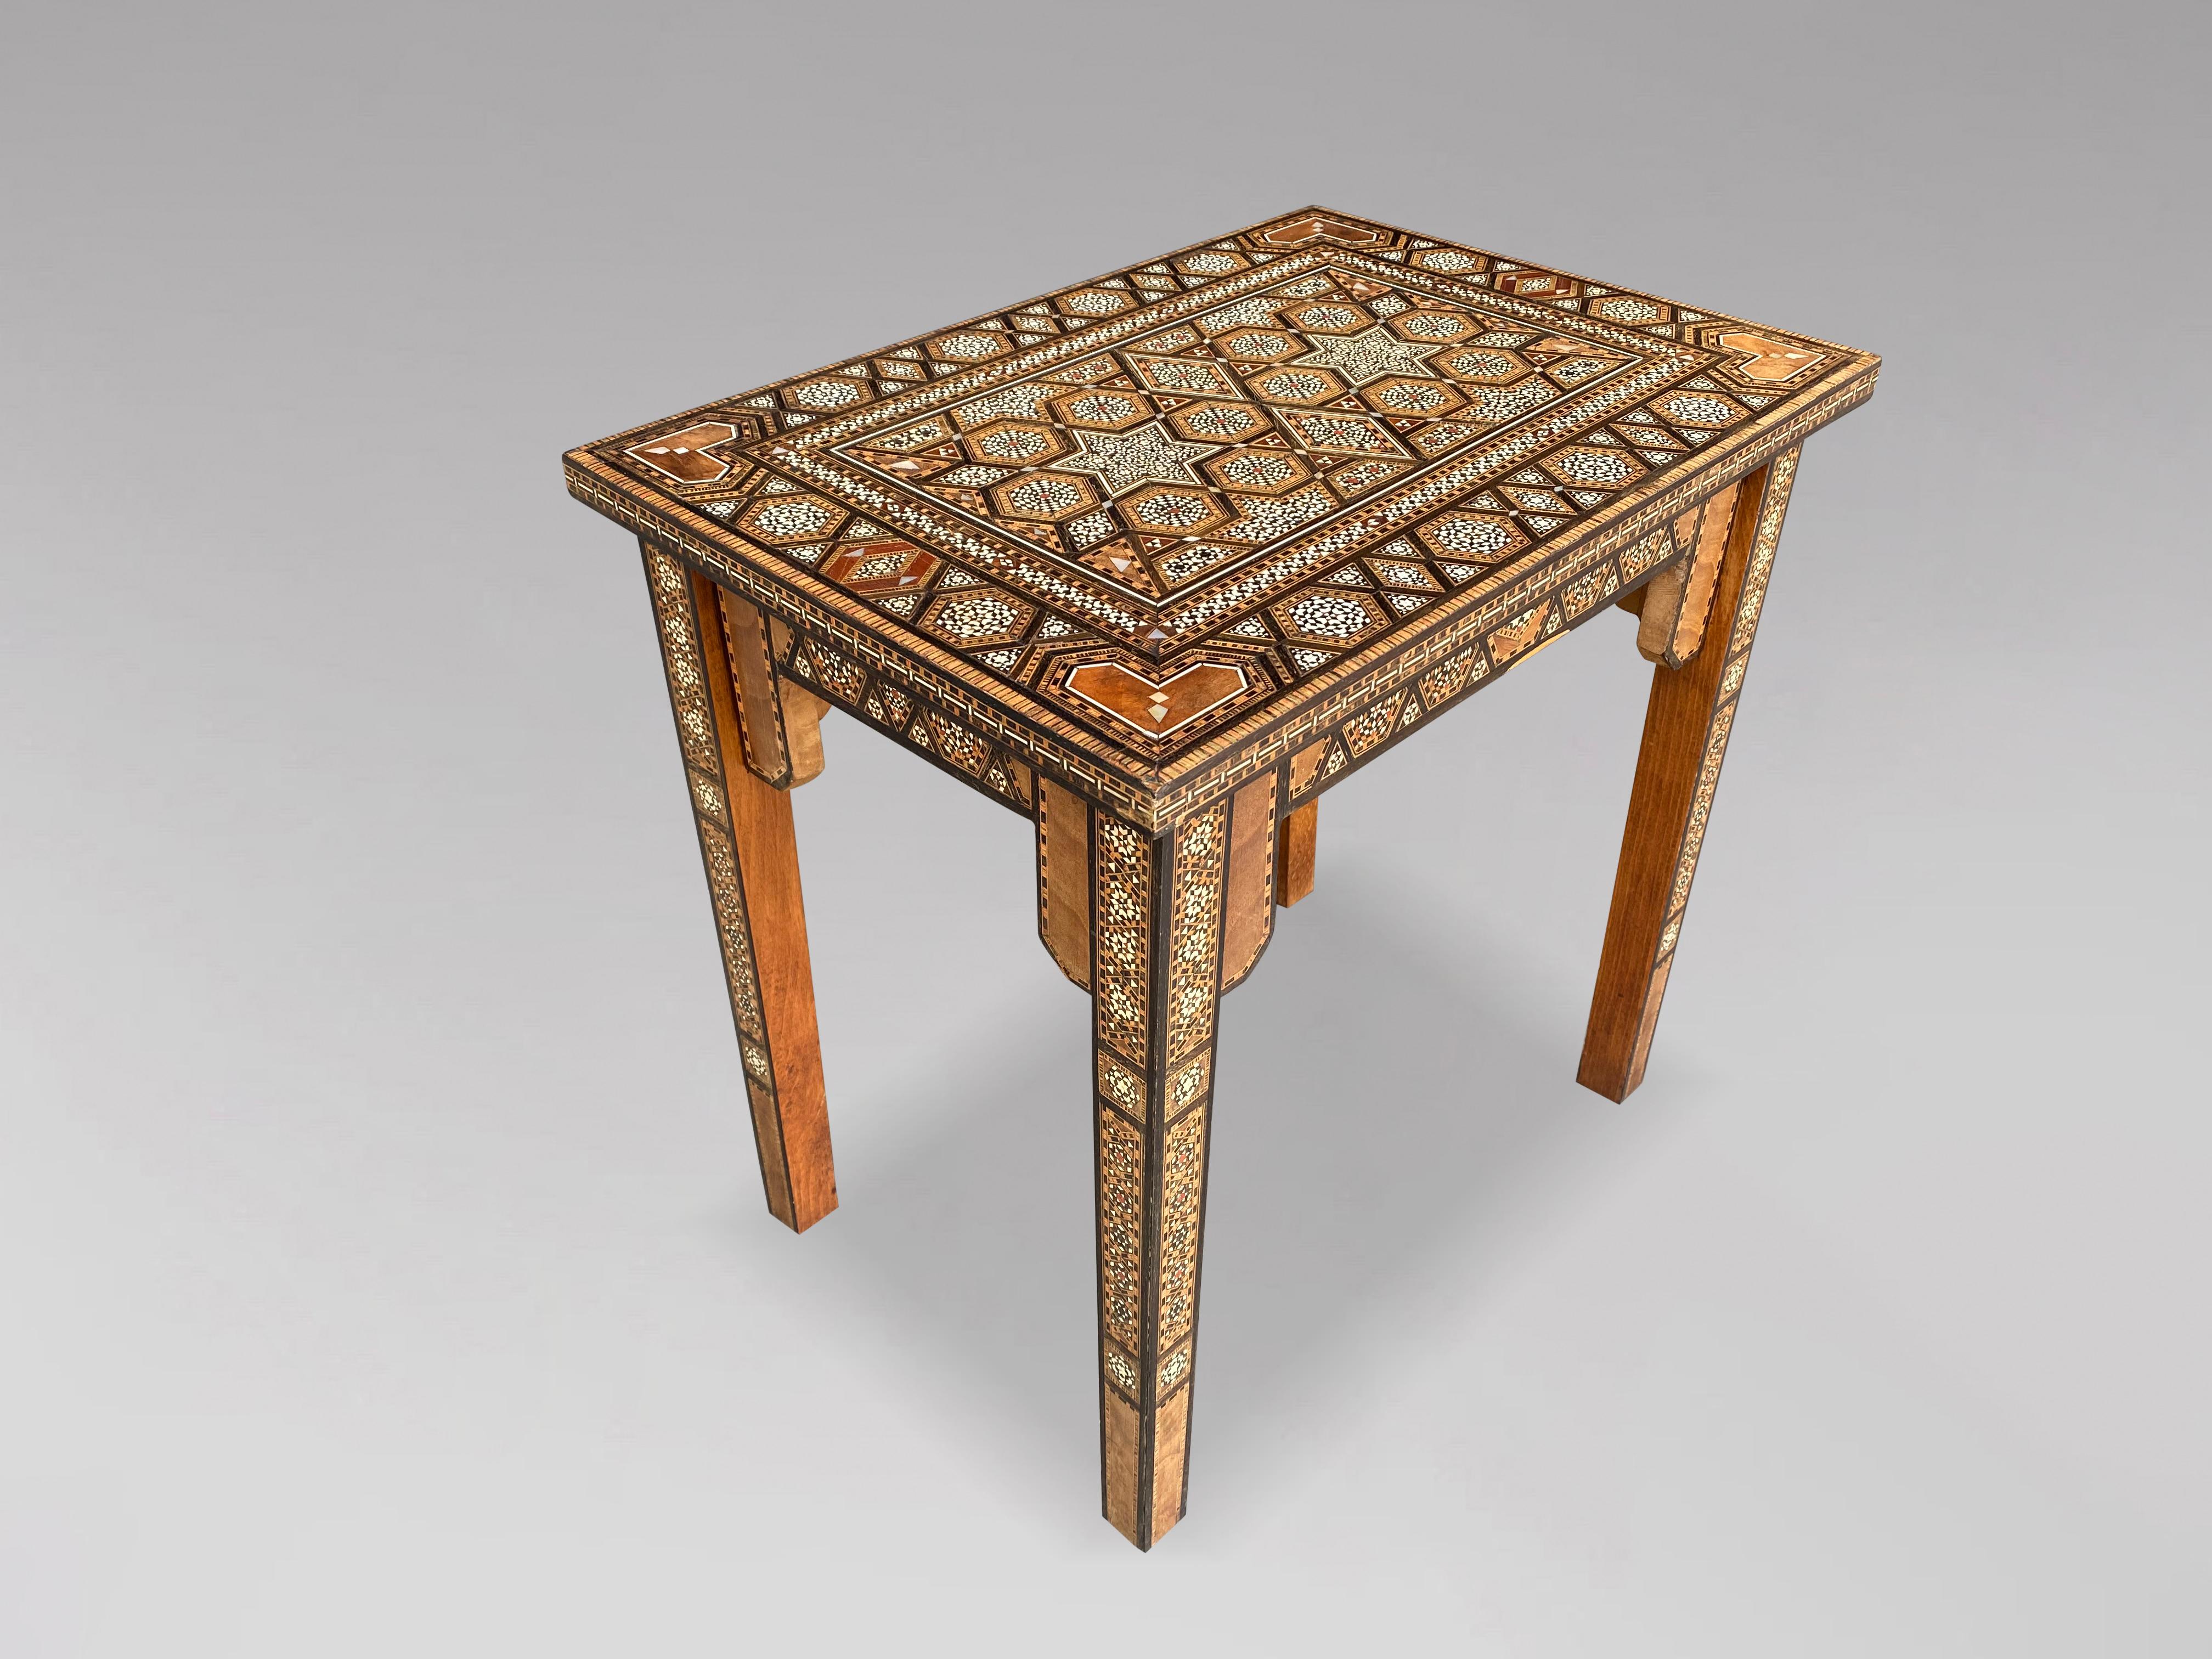 Table d'appoint syrienne en marqueterie du début du 20e siècle, de forme rectangulaire avec un motif géométrique complexe, incrustée de mosaïque d'os, d'ébène, de nacre et d'autres bois, avec un tablier en forme et reposant sur des pieds carrés en